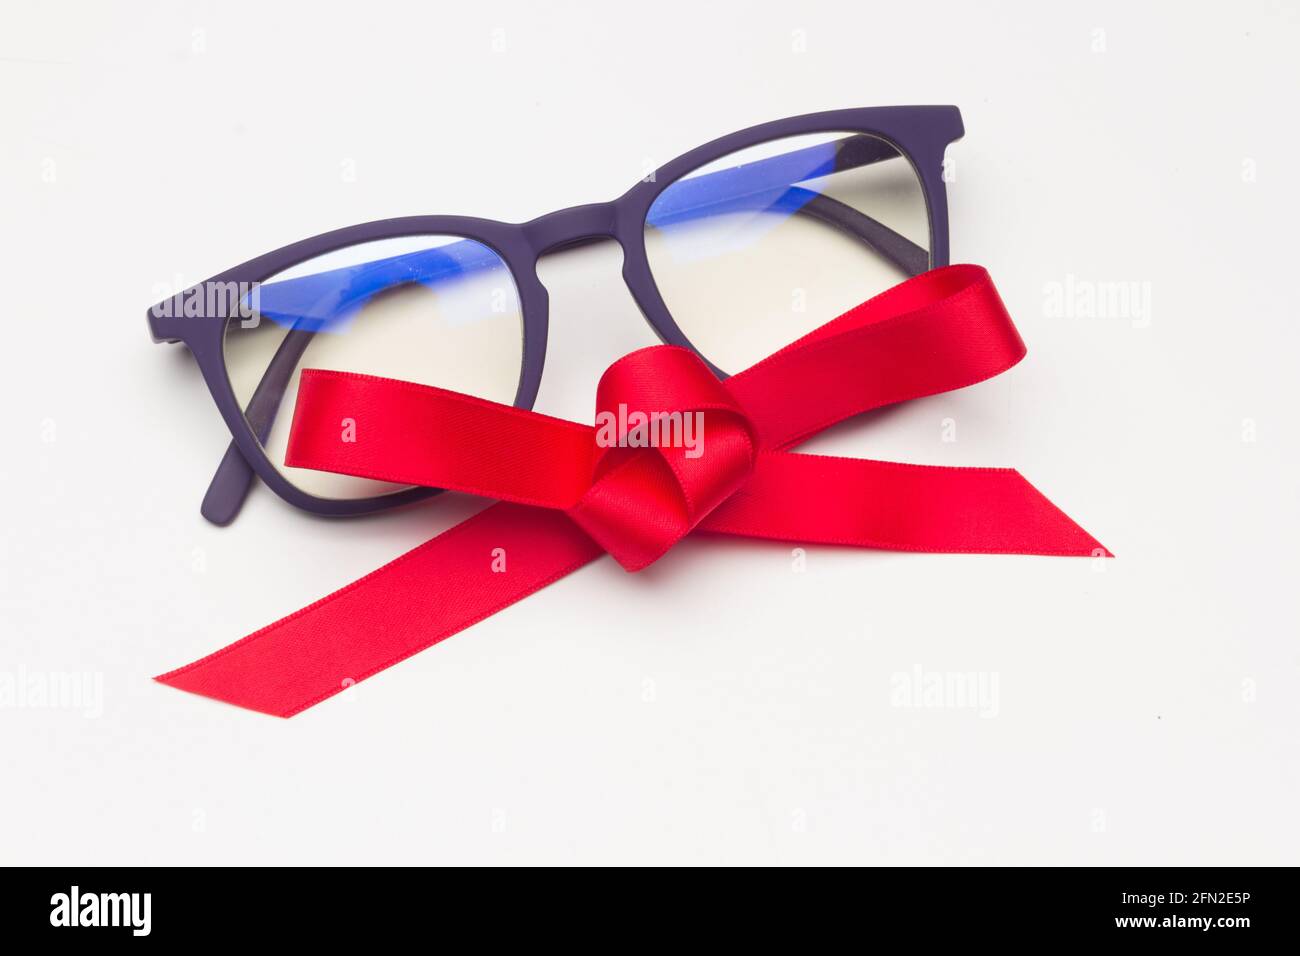 Gafas con un lazo rojo sobre un fondo blanco; lentes modernas para ver mejor  puede ser un buen regalo Fotografía de stock - Alamy